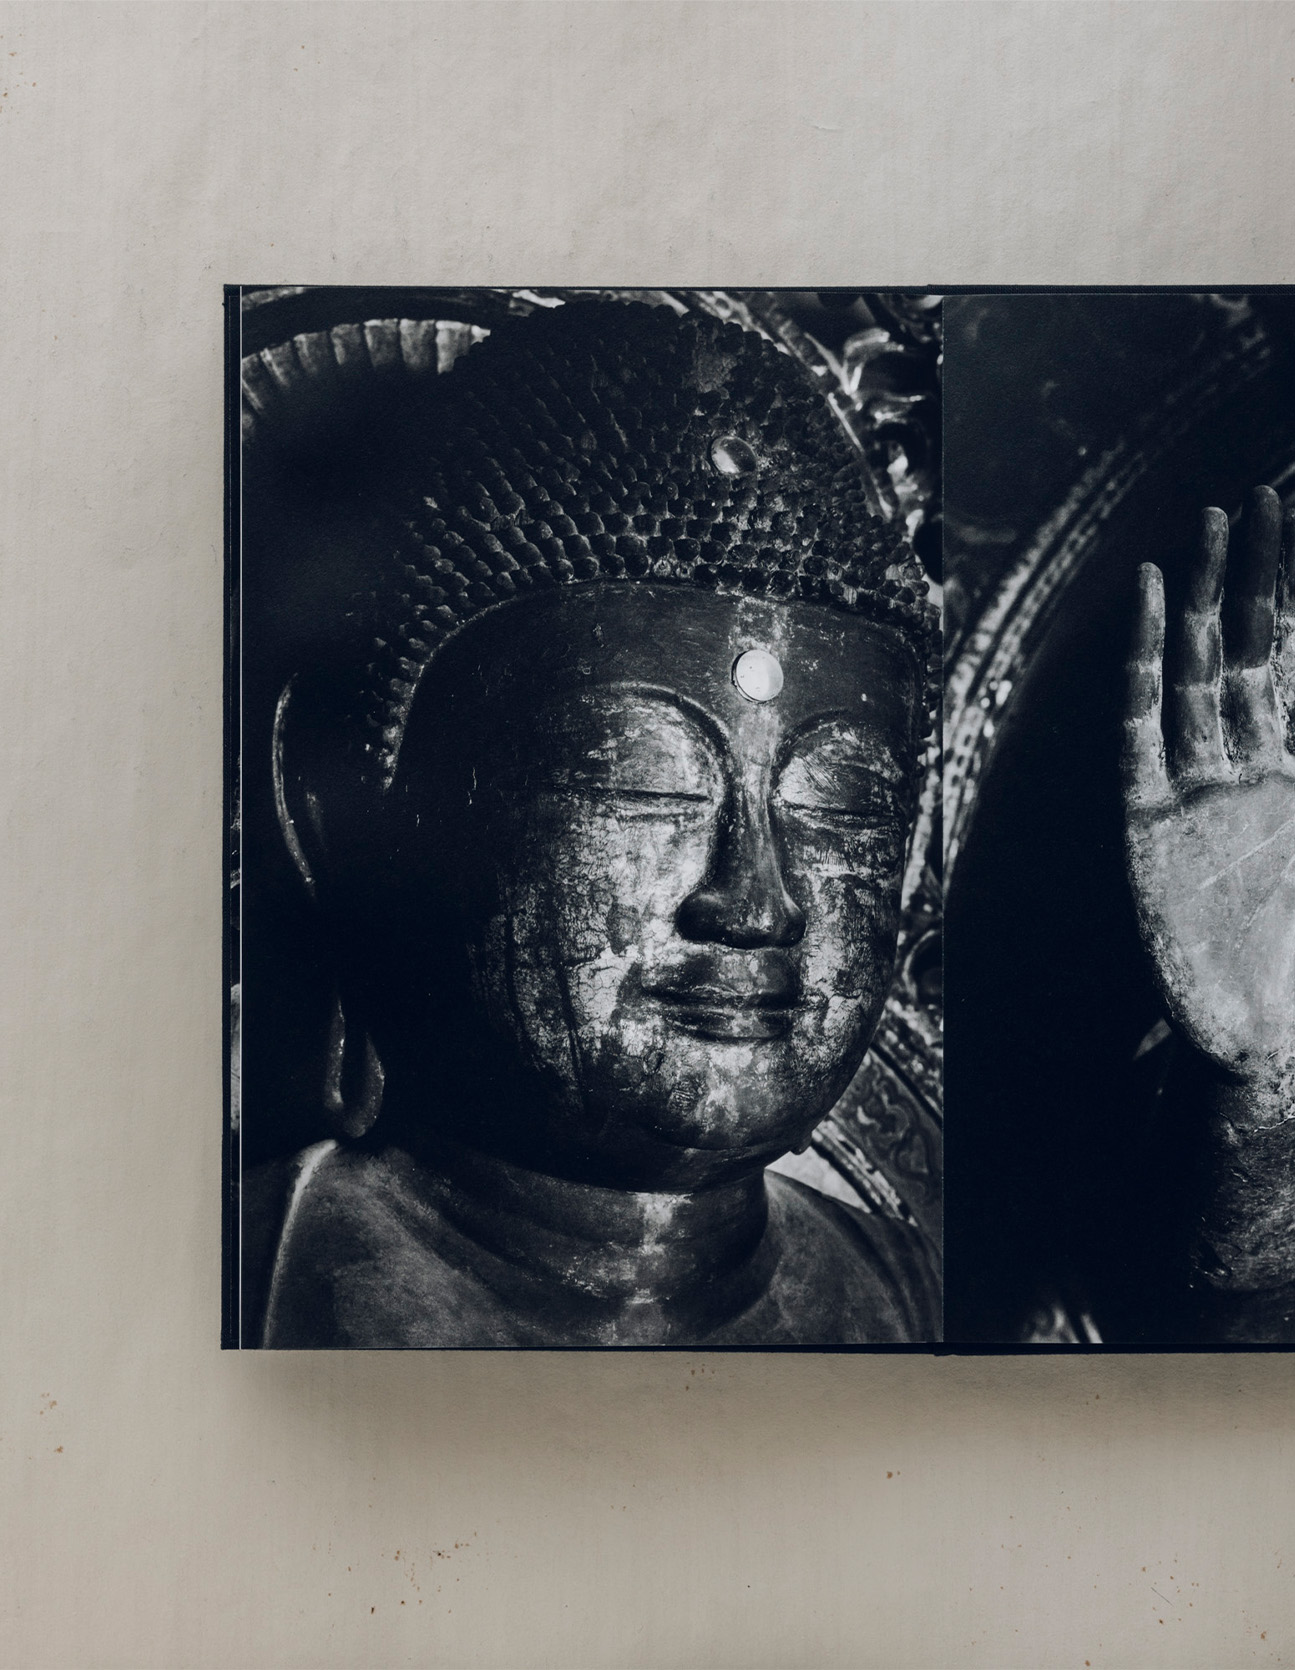 須藤和也が写真撮影した本「gleam」の仏像のページ